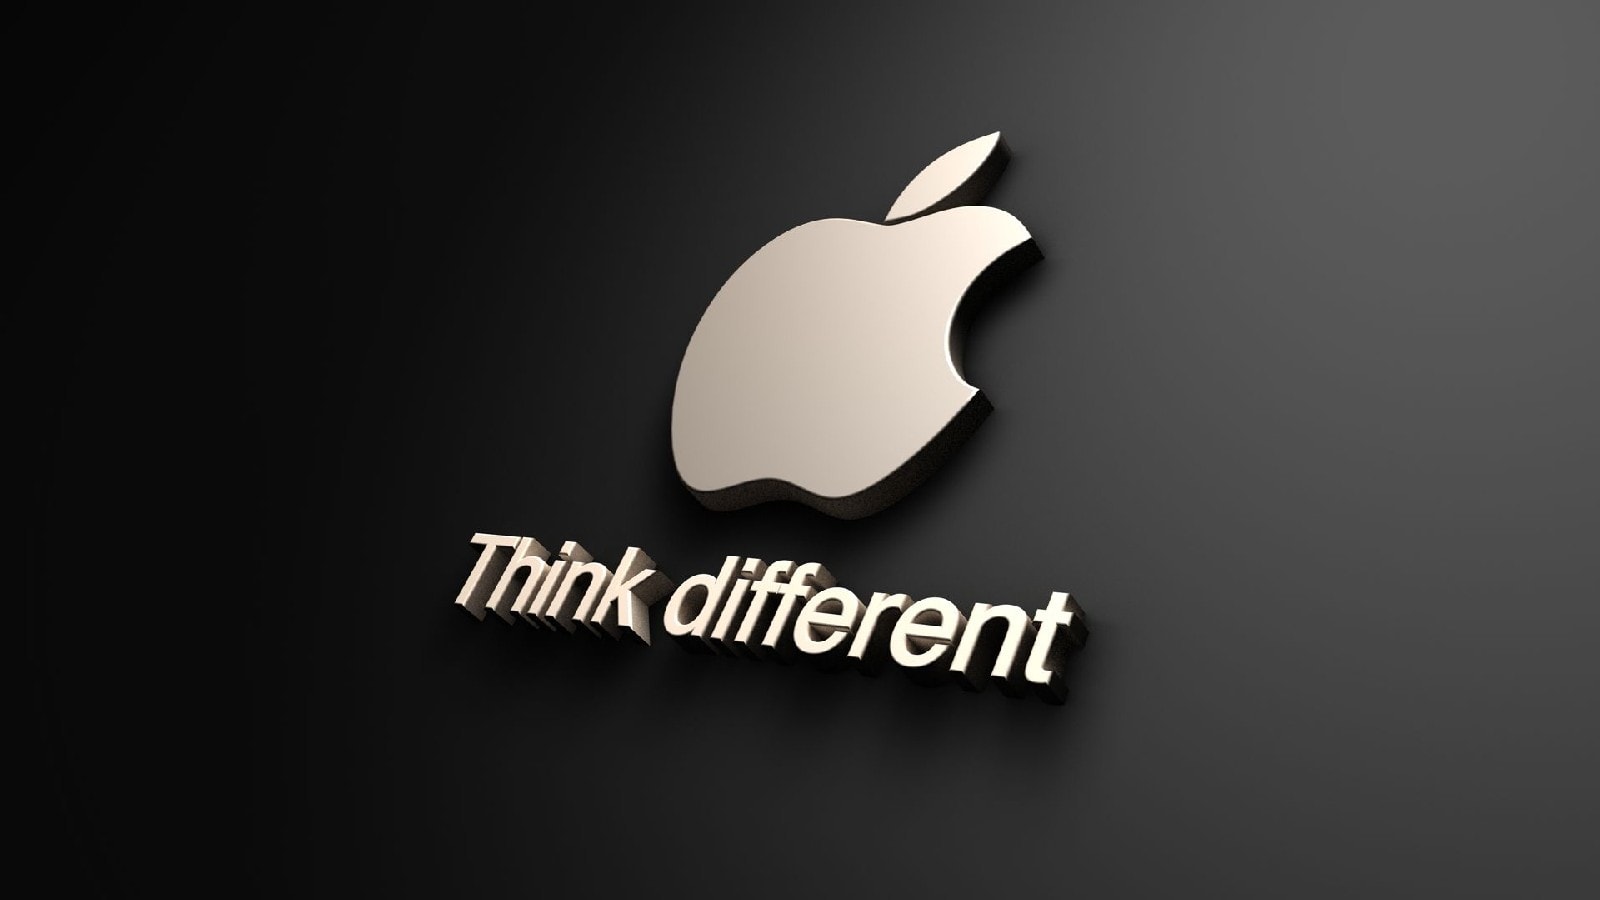 Slogan, Apple